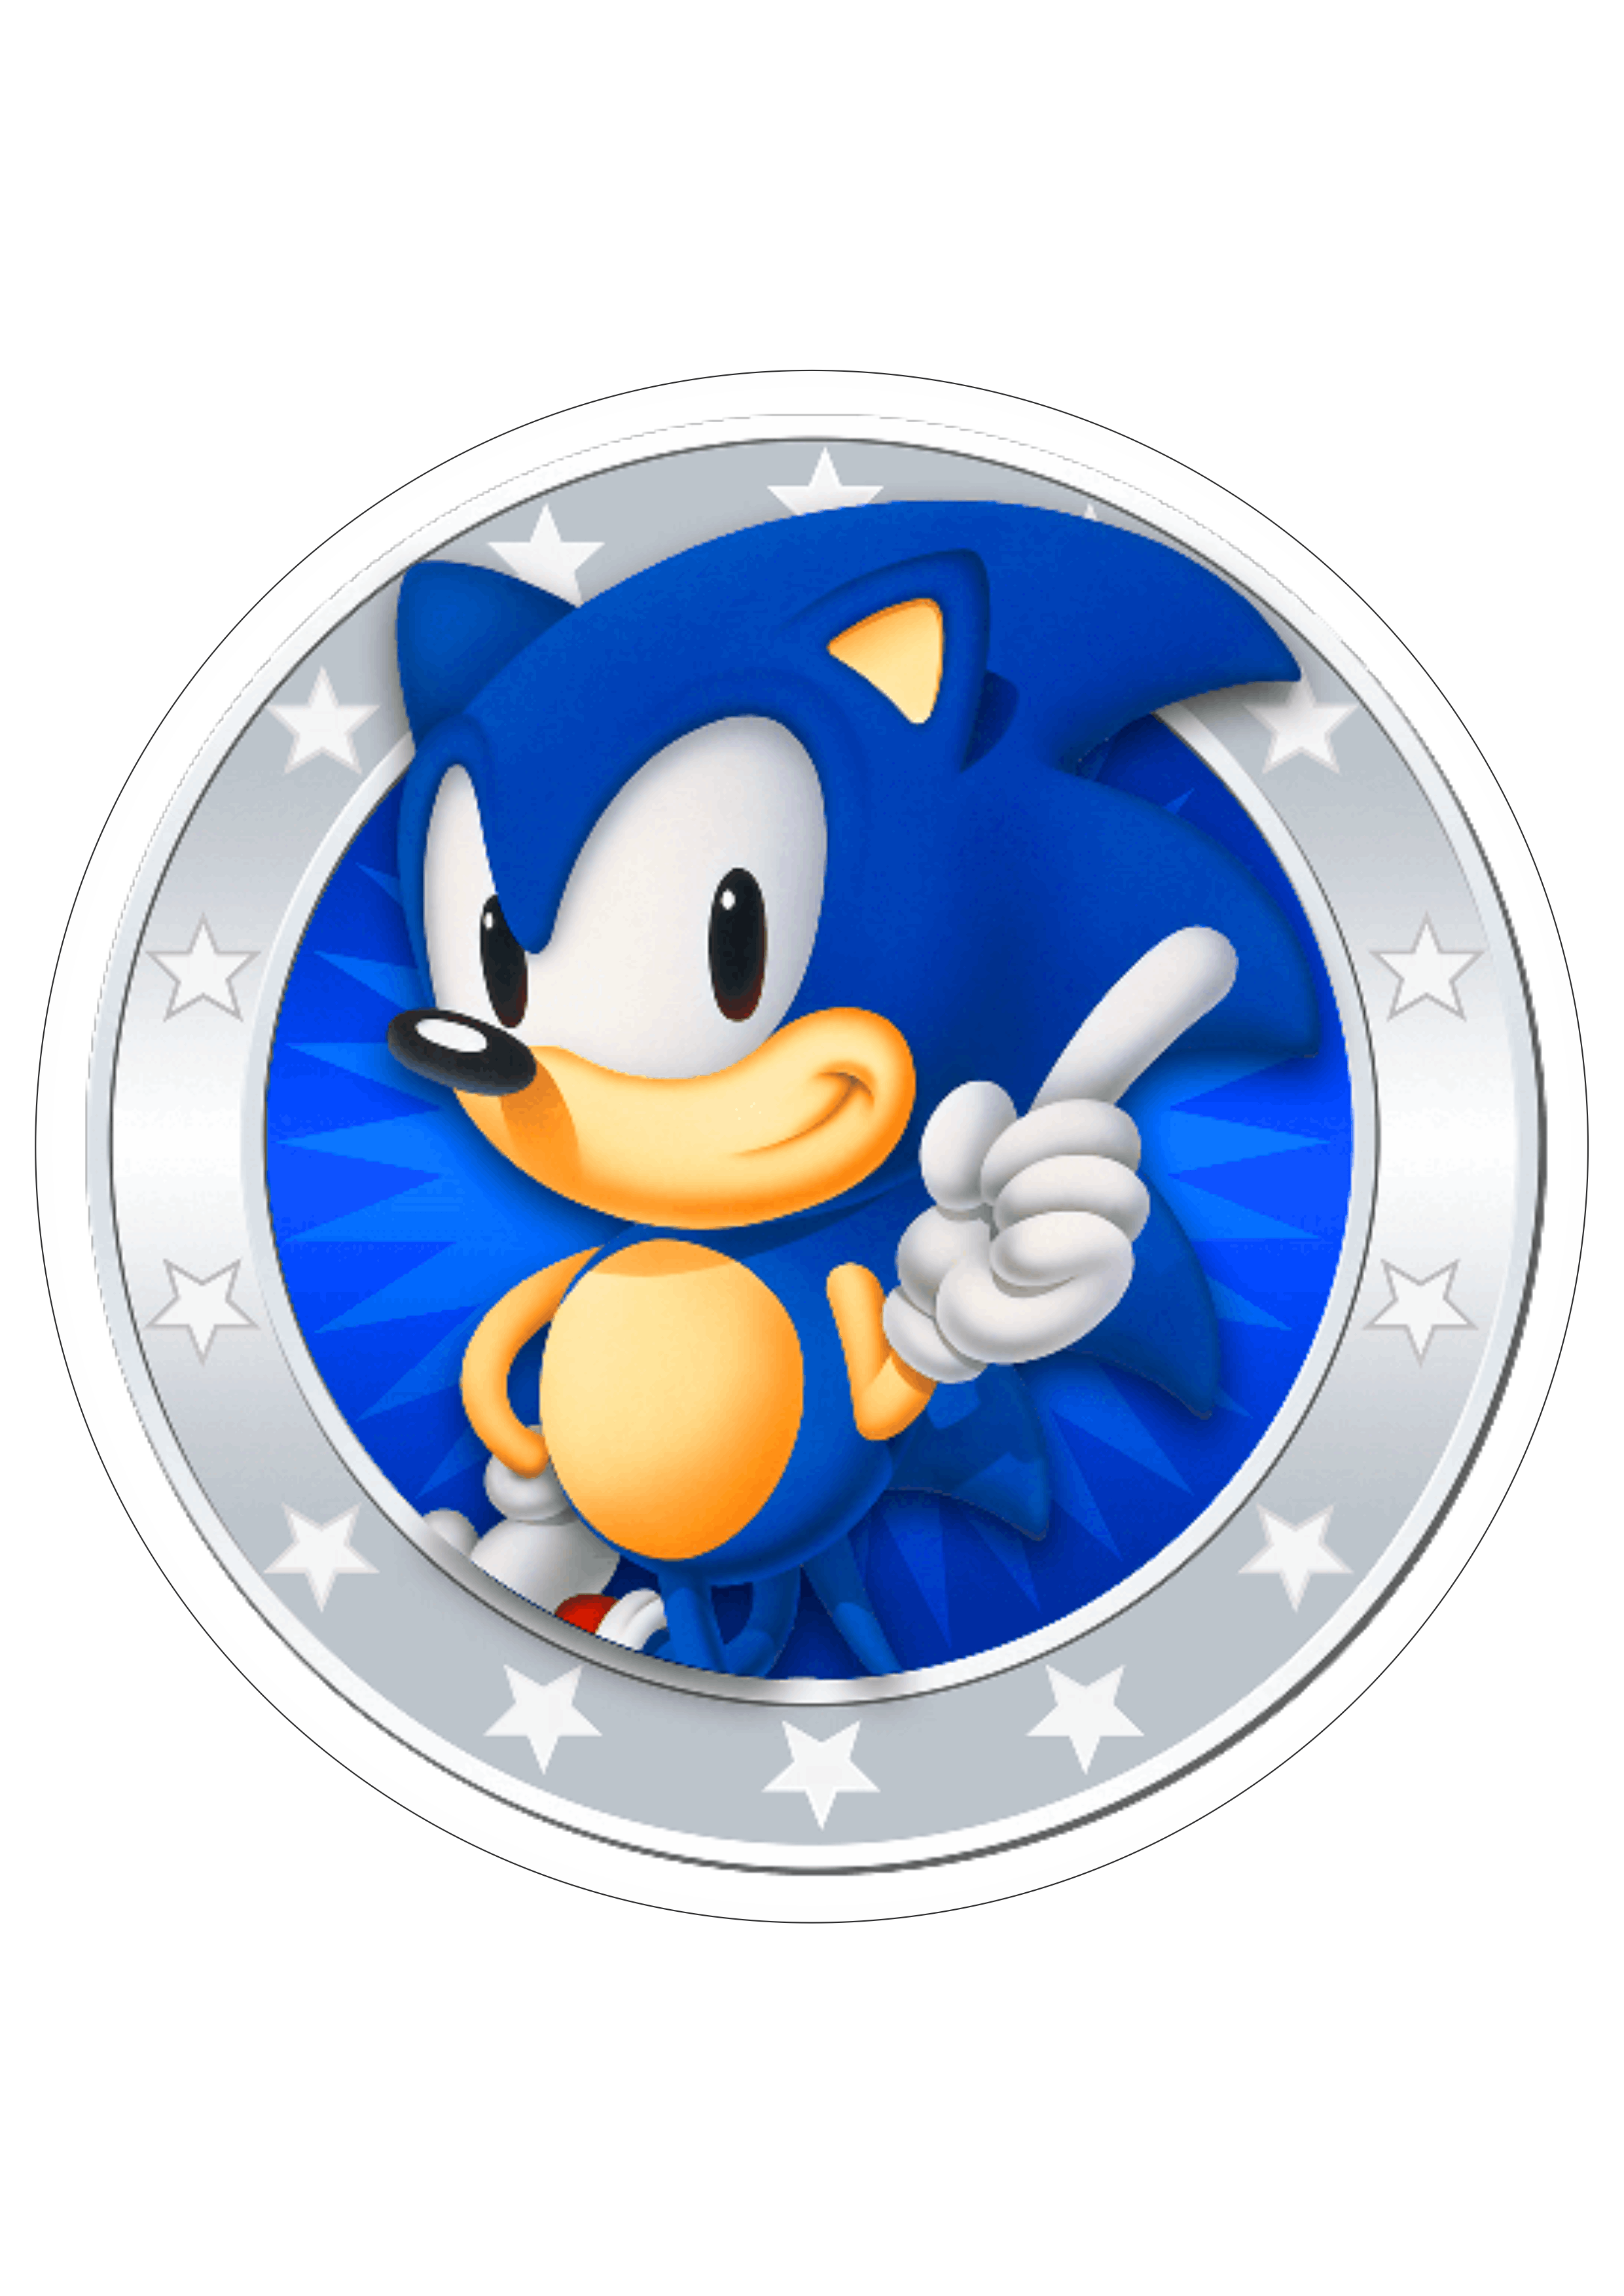 Sonic the hedgehog personagem de game sega  logo png